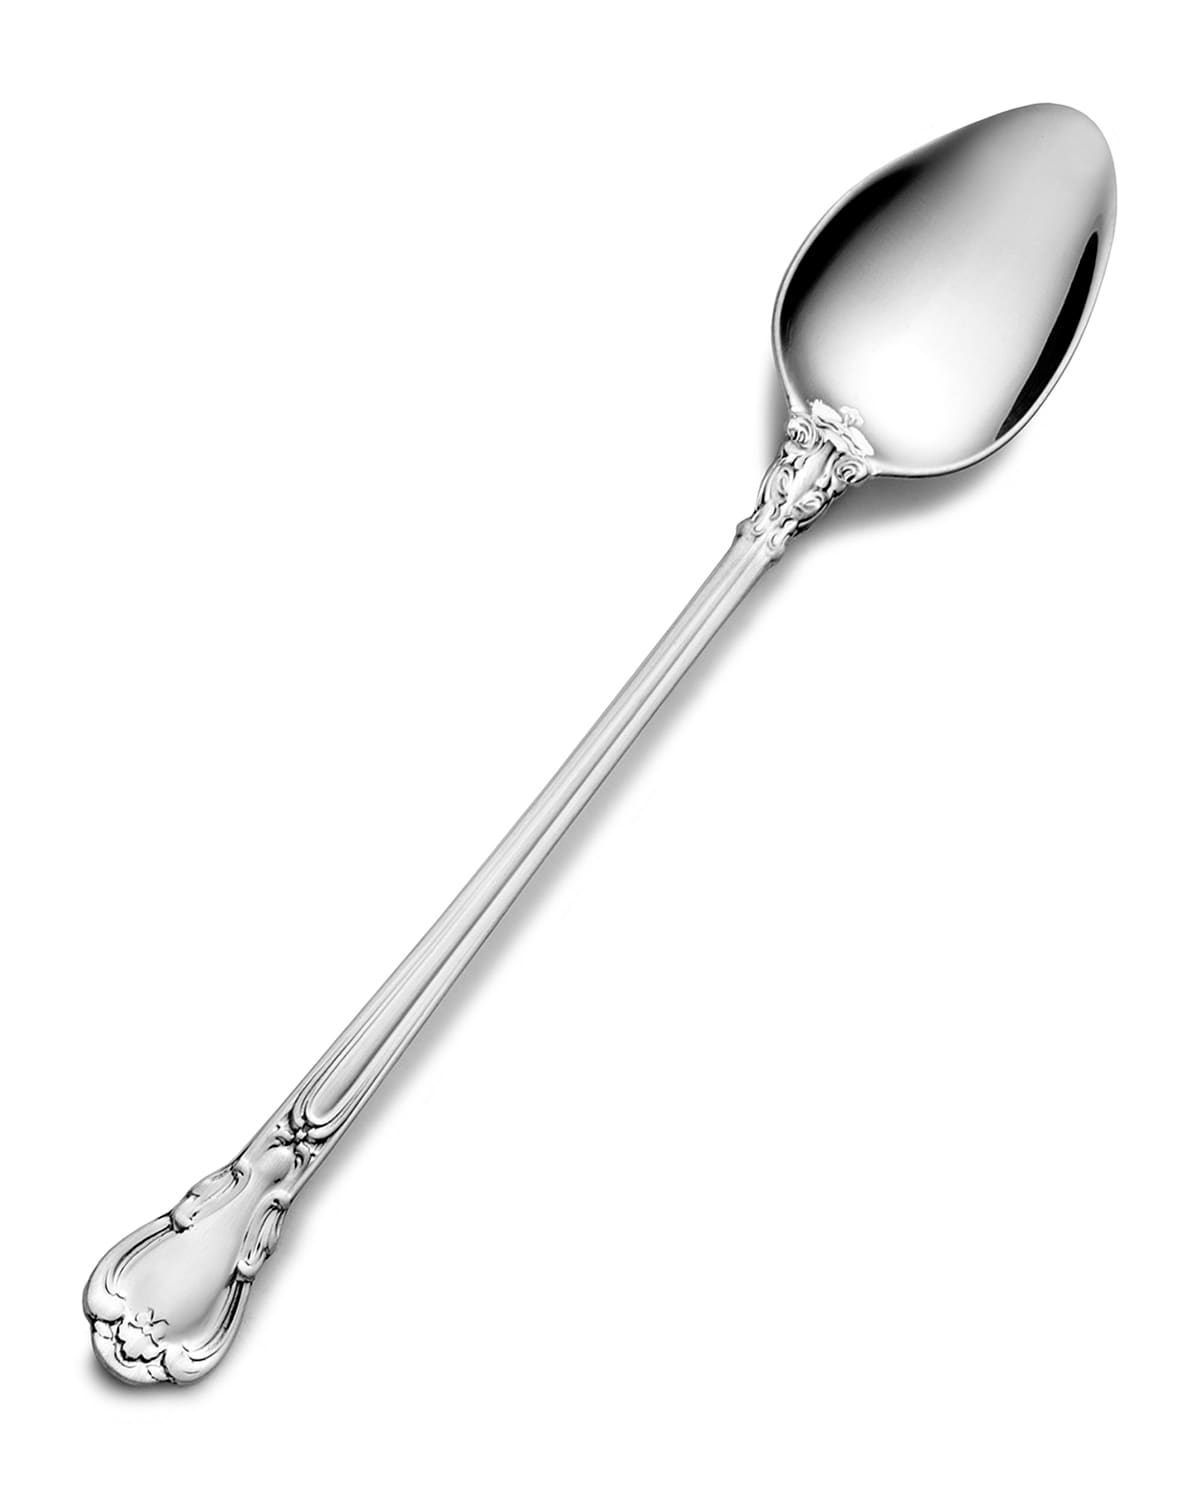 Shop Gorham Chantilly Infant Feeding Spoon In Silver